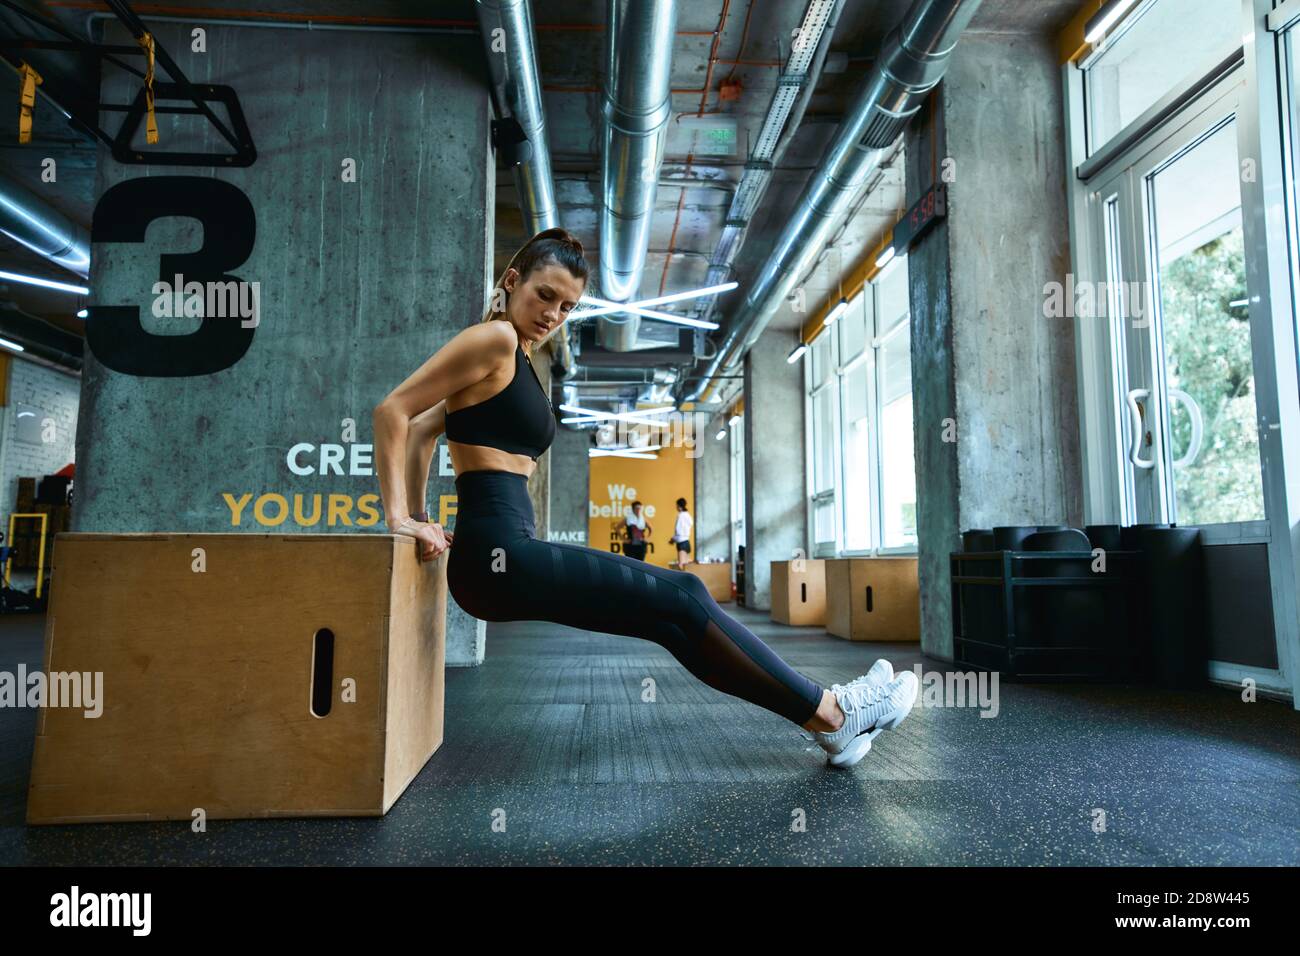 Fitnesstraining. In voller Länge junge athletische Frau in Sportbekleidung tun Trizeps Übungen auf hölzernen Crossfit Jump Box im Fitnessstudio. Sportliche Menschen, gesunder Lebensstil und Workout-Konzept Stockfoto